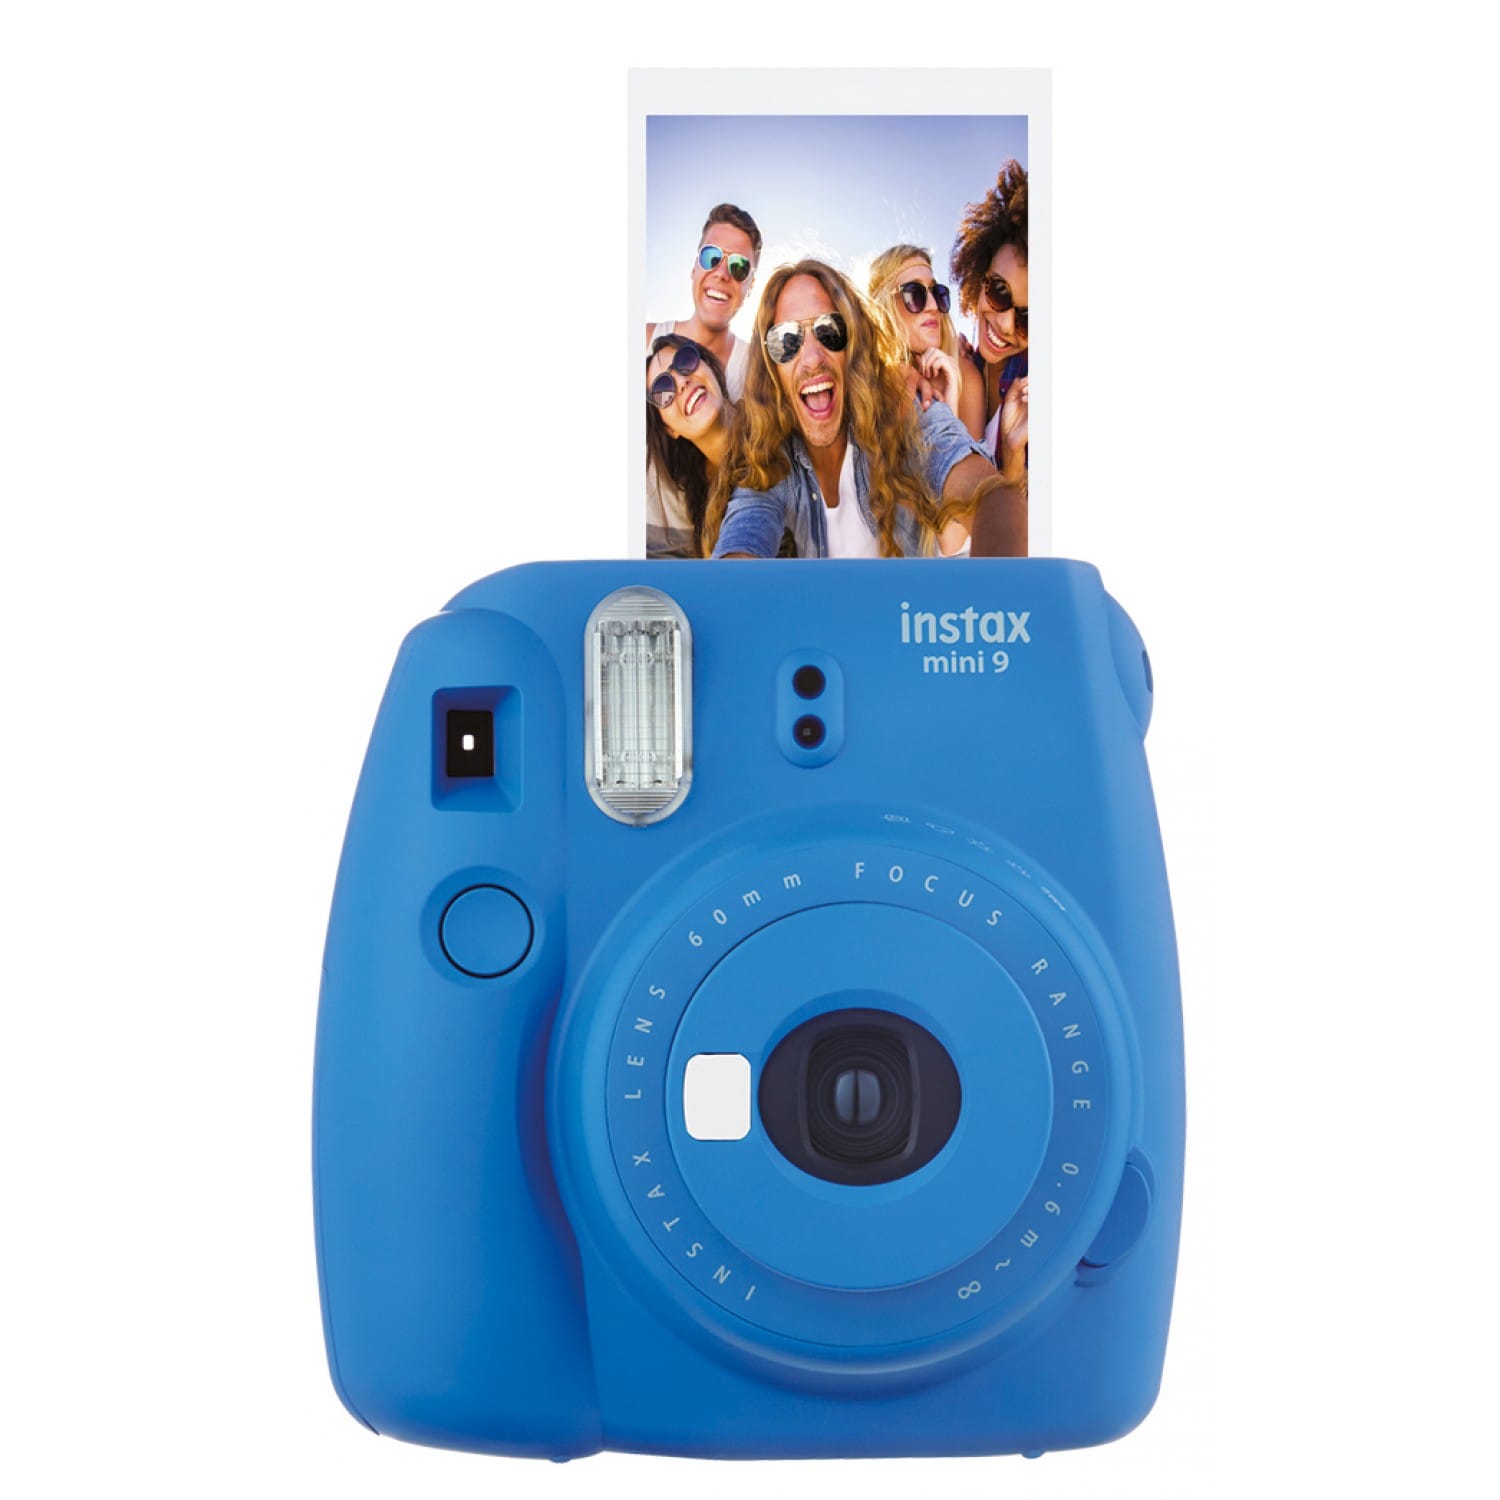 Appareil photo instantané FUJI Instax Mini 11 - Format photo 62 x 46mm -  Livré avec 2 piles LR6 et dragonne - Sky Blue (Bleu)